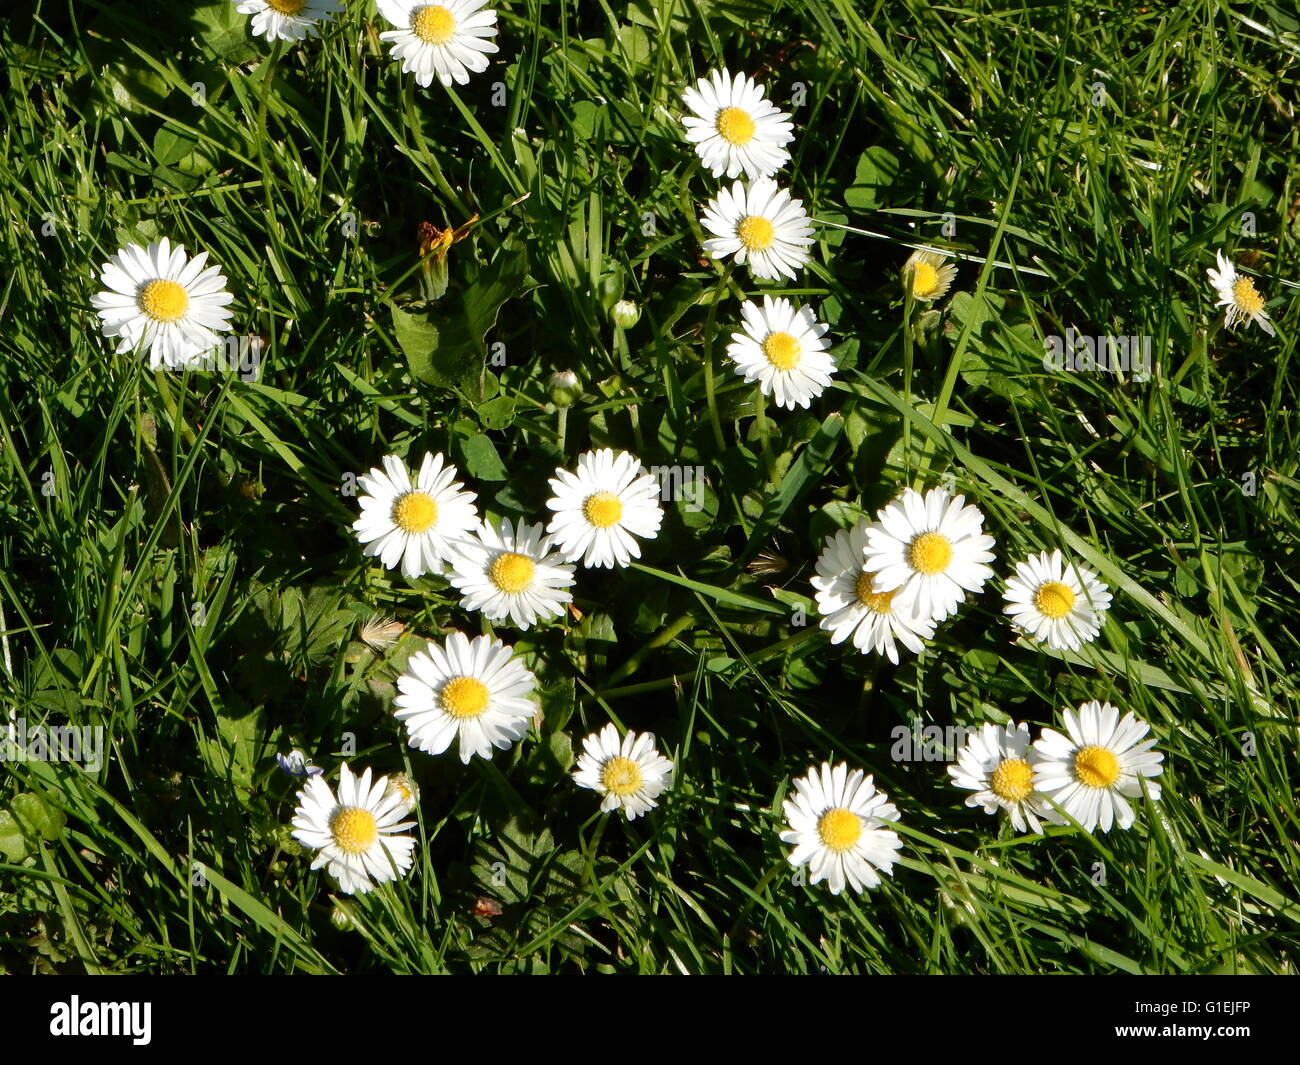 daisy flowers in a garden in Bonn, Germany Stock Photo